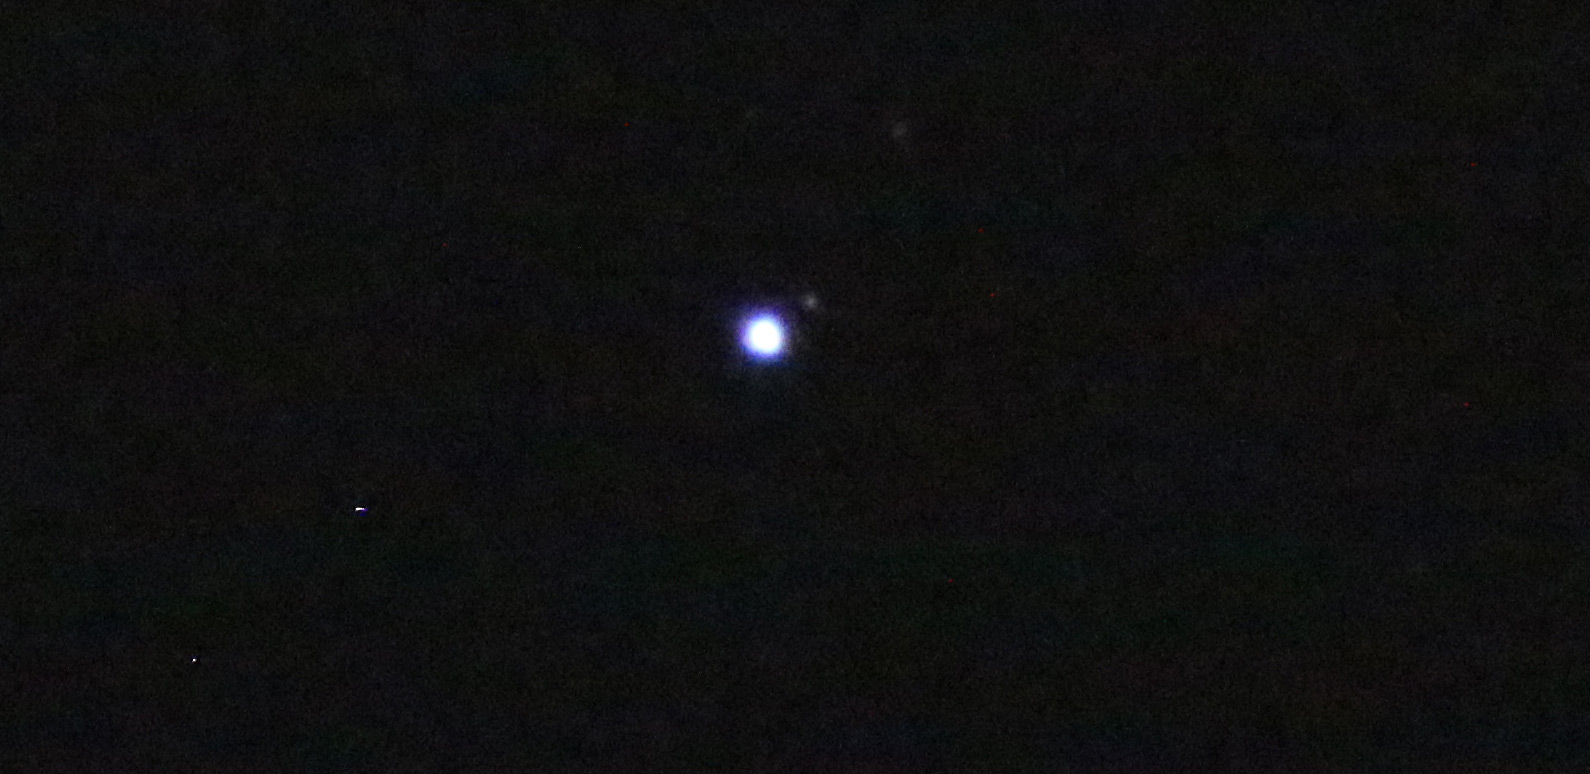 Capturing Neptune & Triton with a Small Telescope